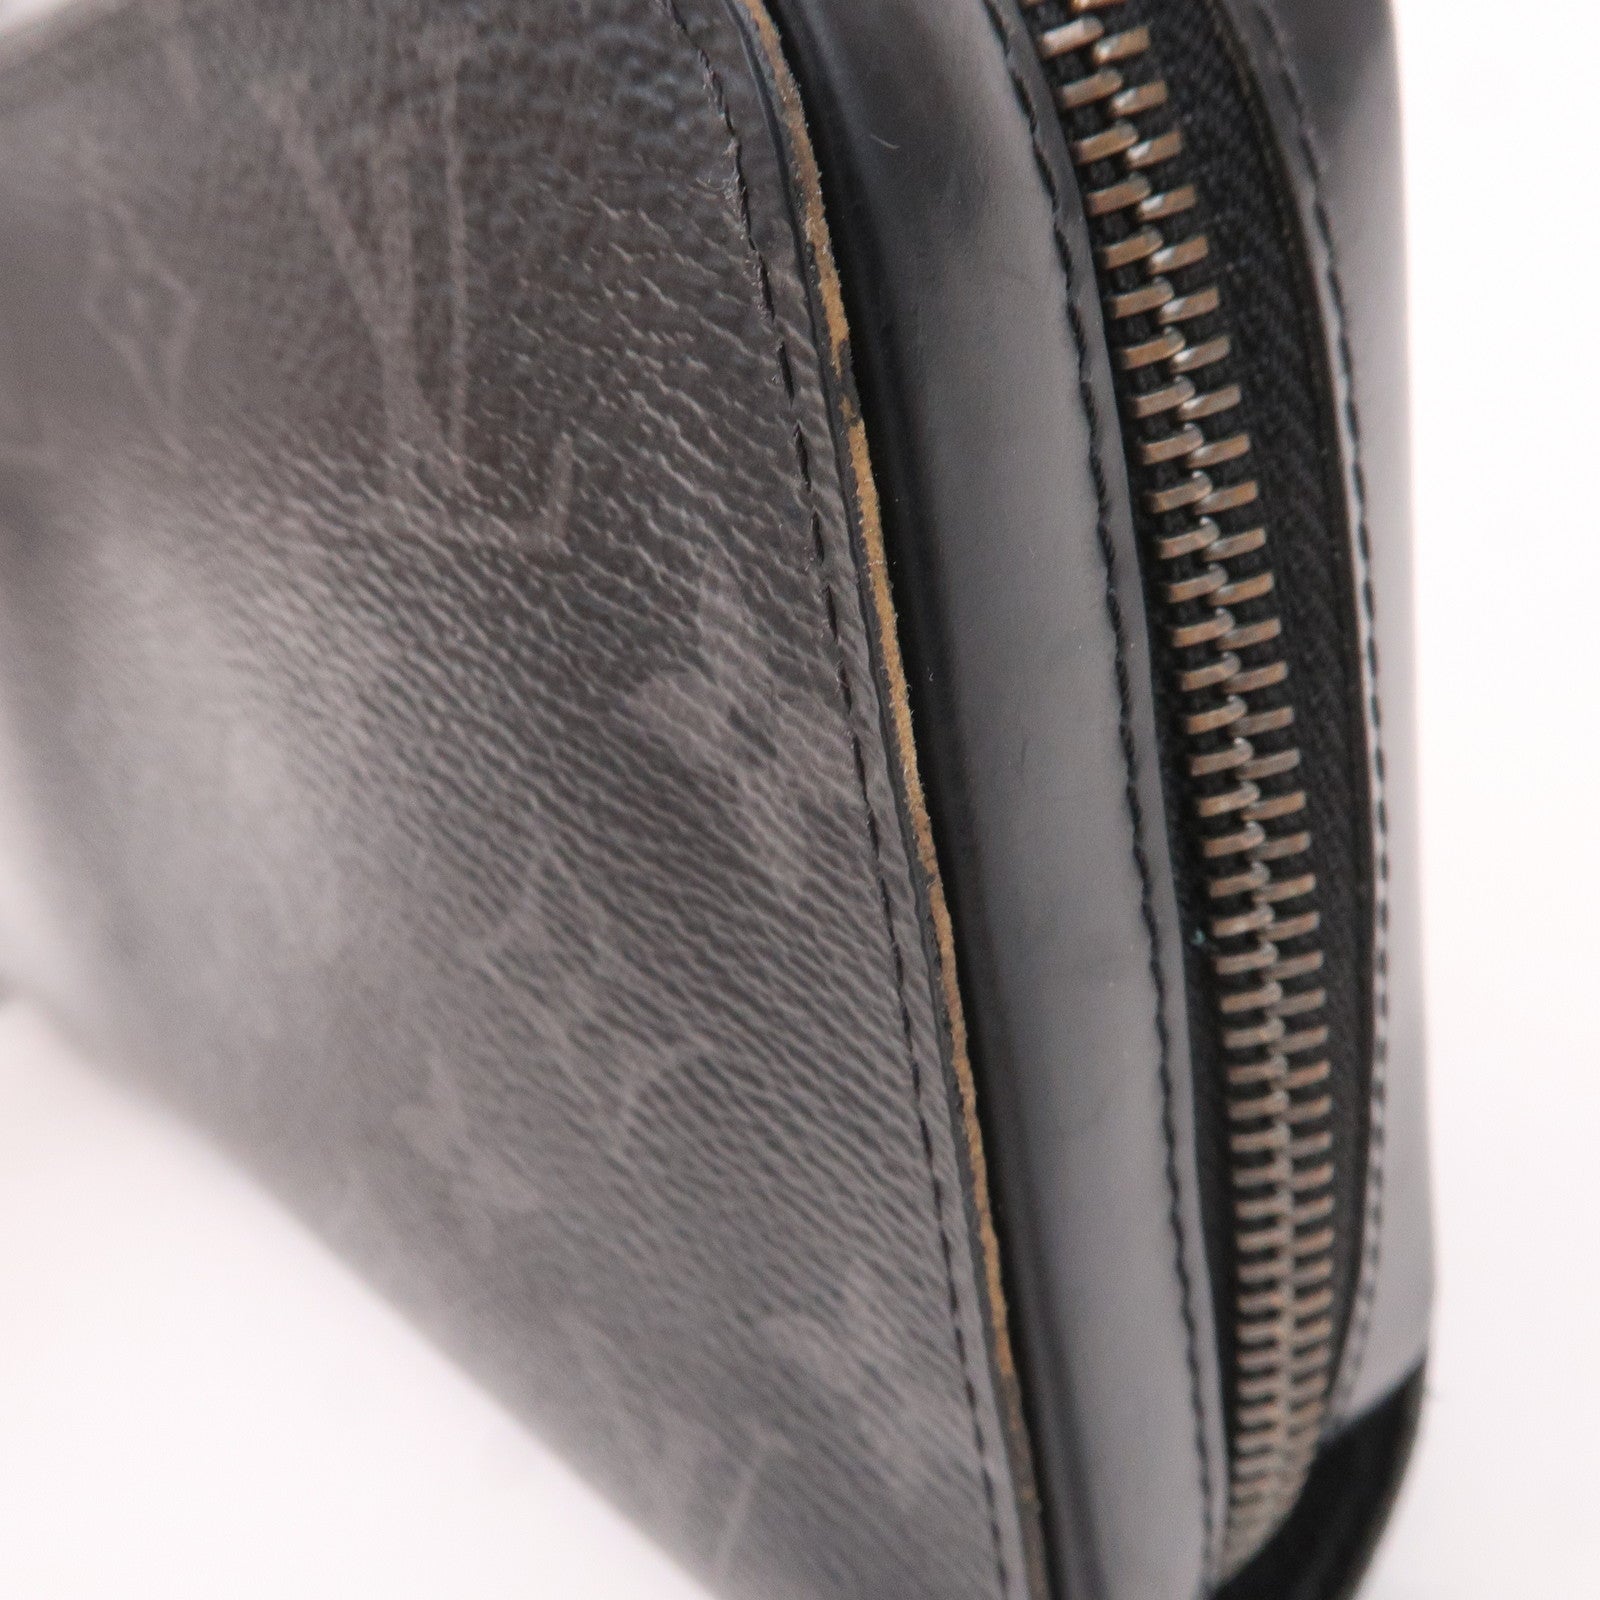 LOUIS VUITTON purse M61698 Zippy Wallet XL Monogram Eclipse Black mens –